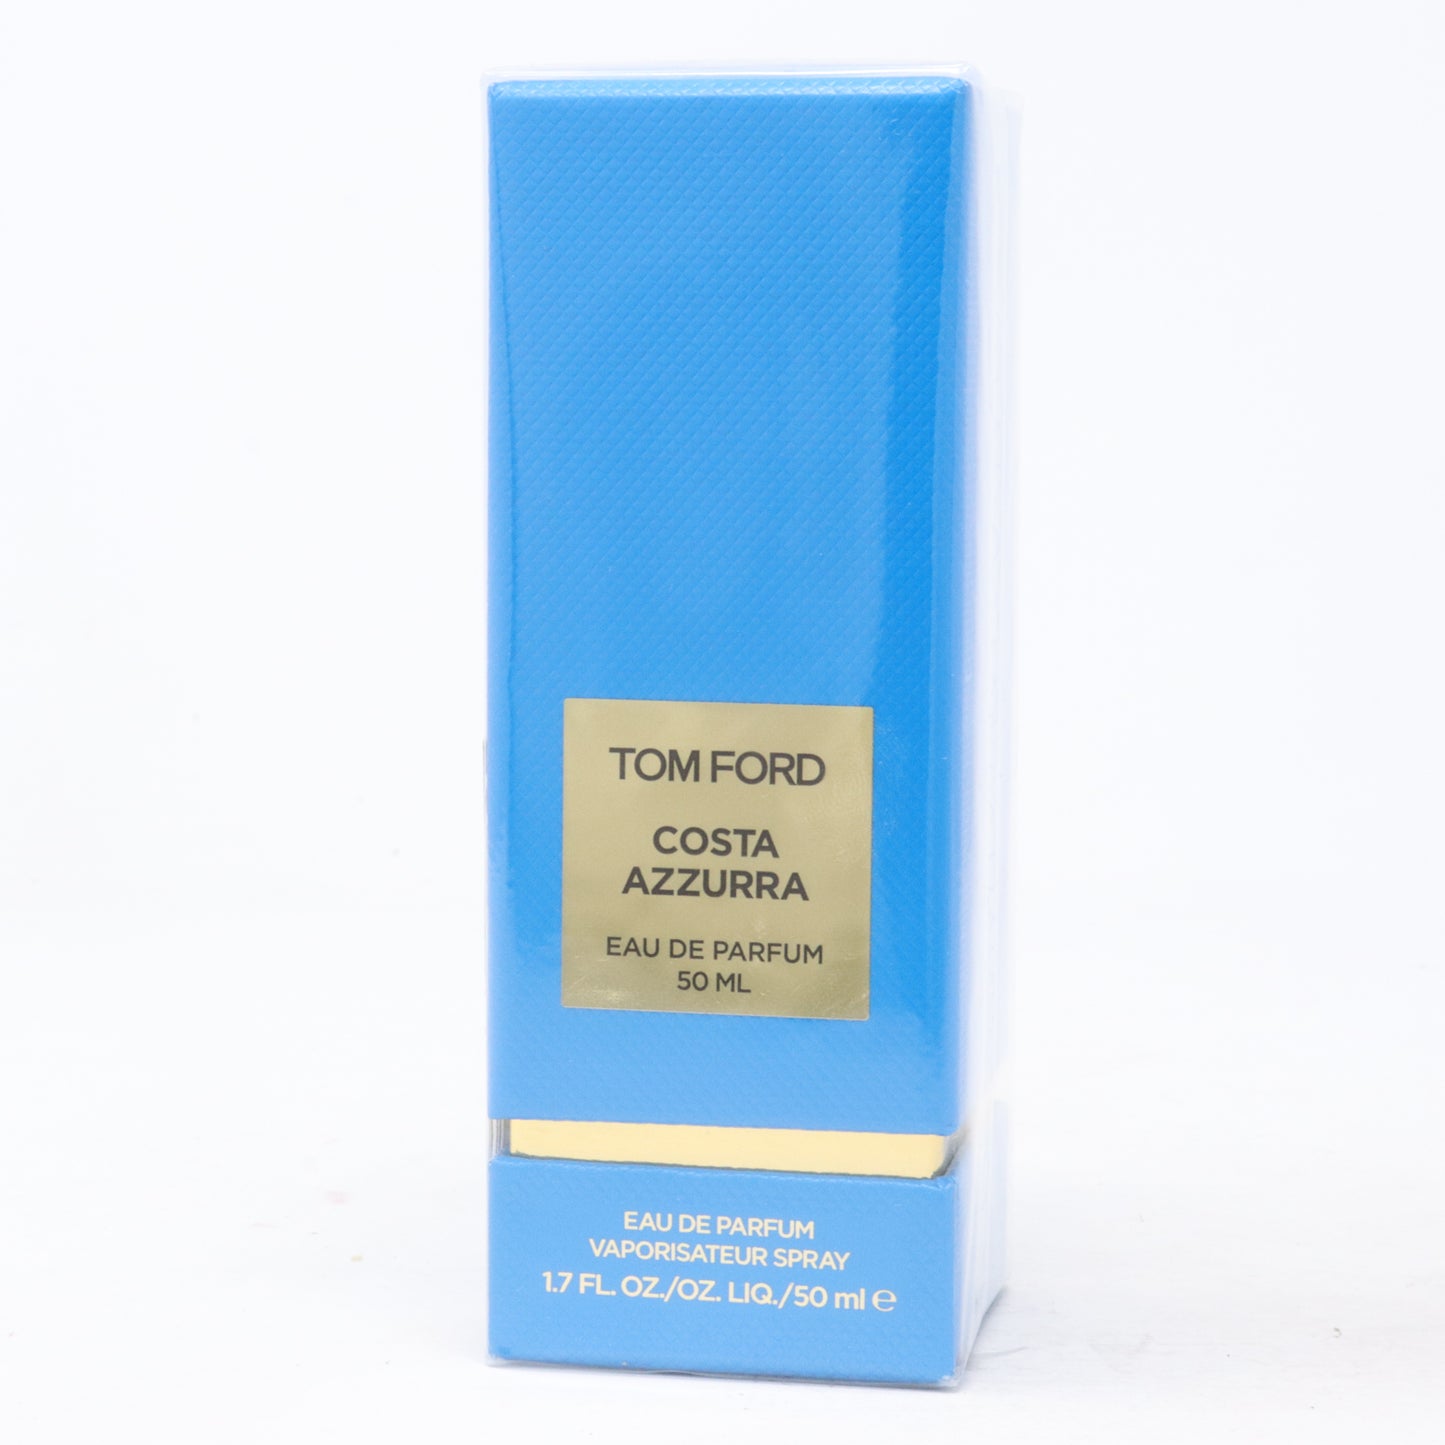 Costa Azzurra Eau De Parfum 50 ml